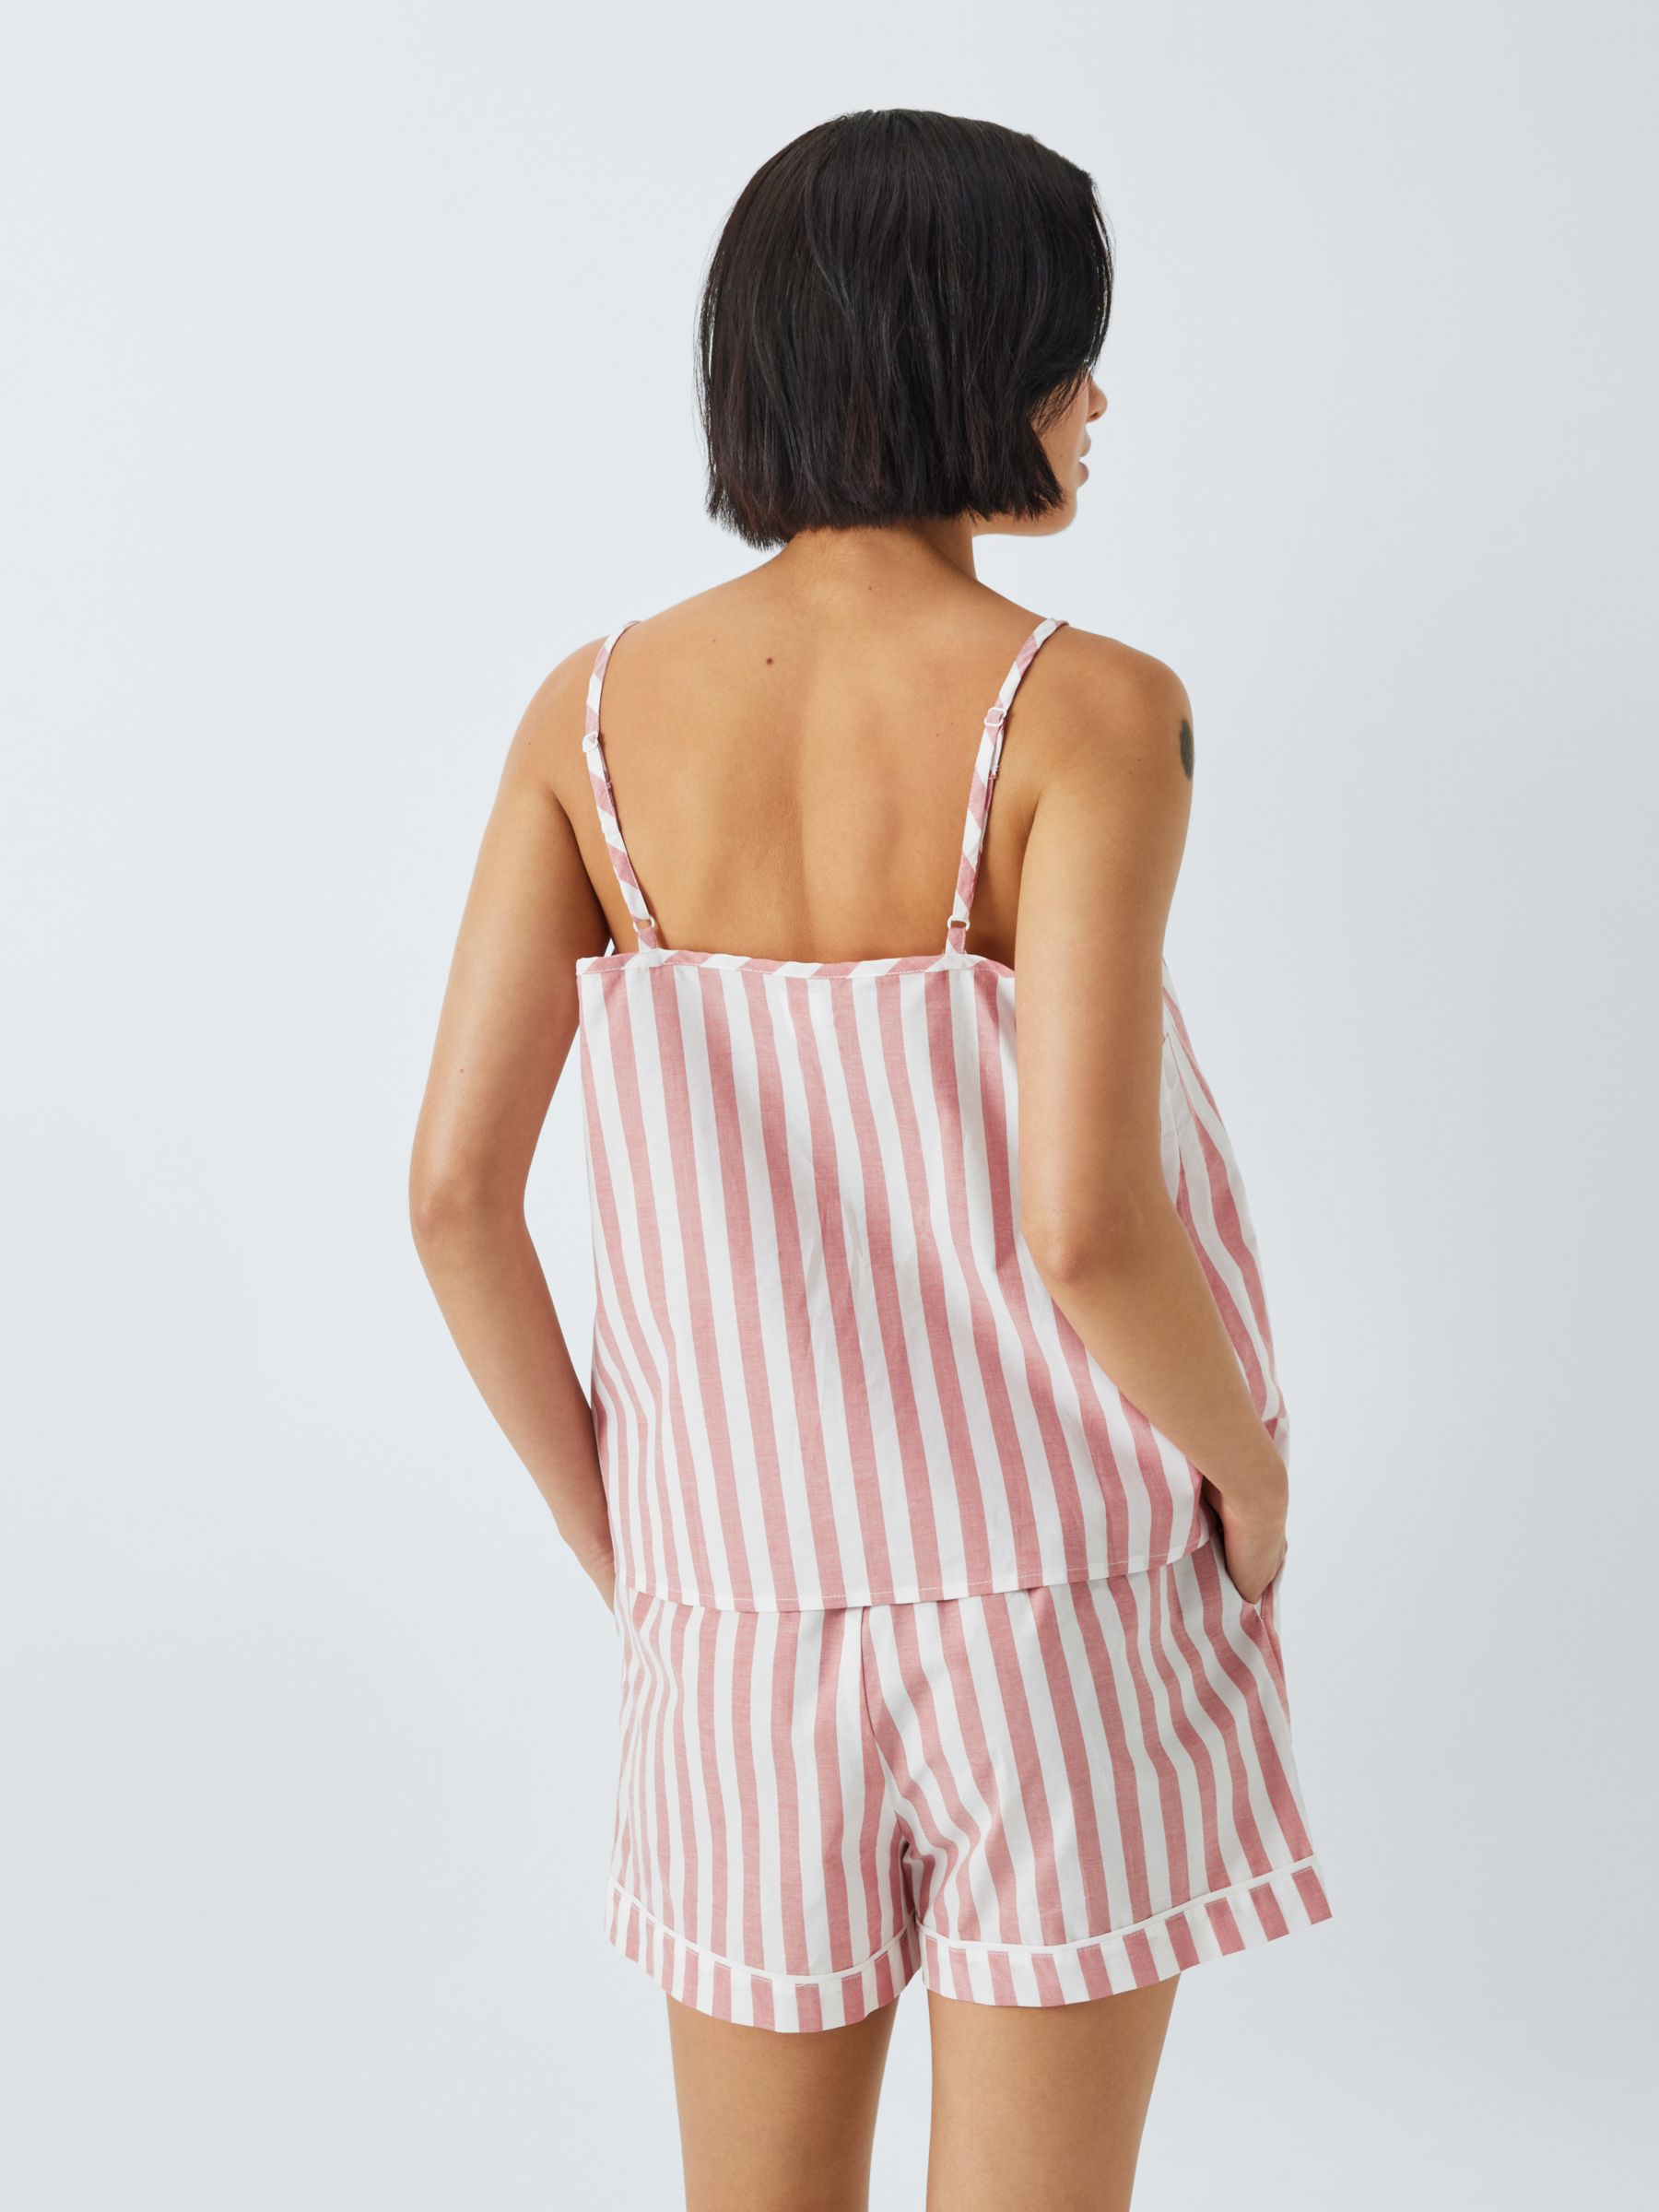 Buy John Lewis Kora Stripe Camisole Pyjama Top, Desert Rose Online at johnlewis.com